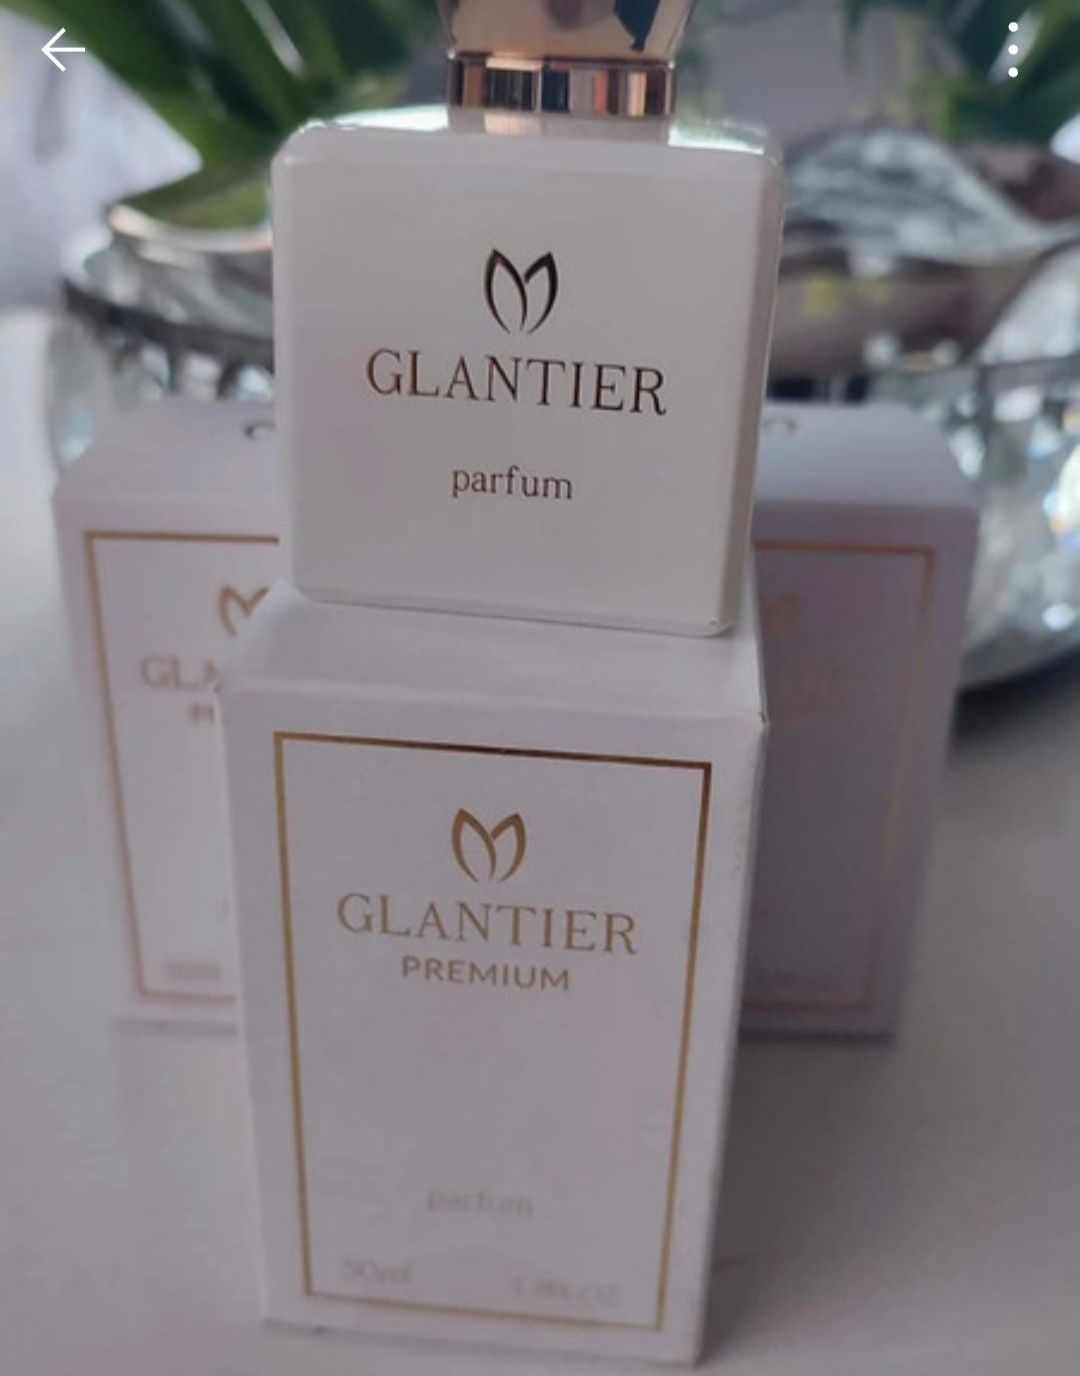 Glantier premium